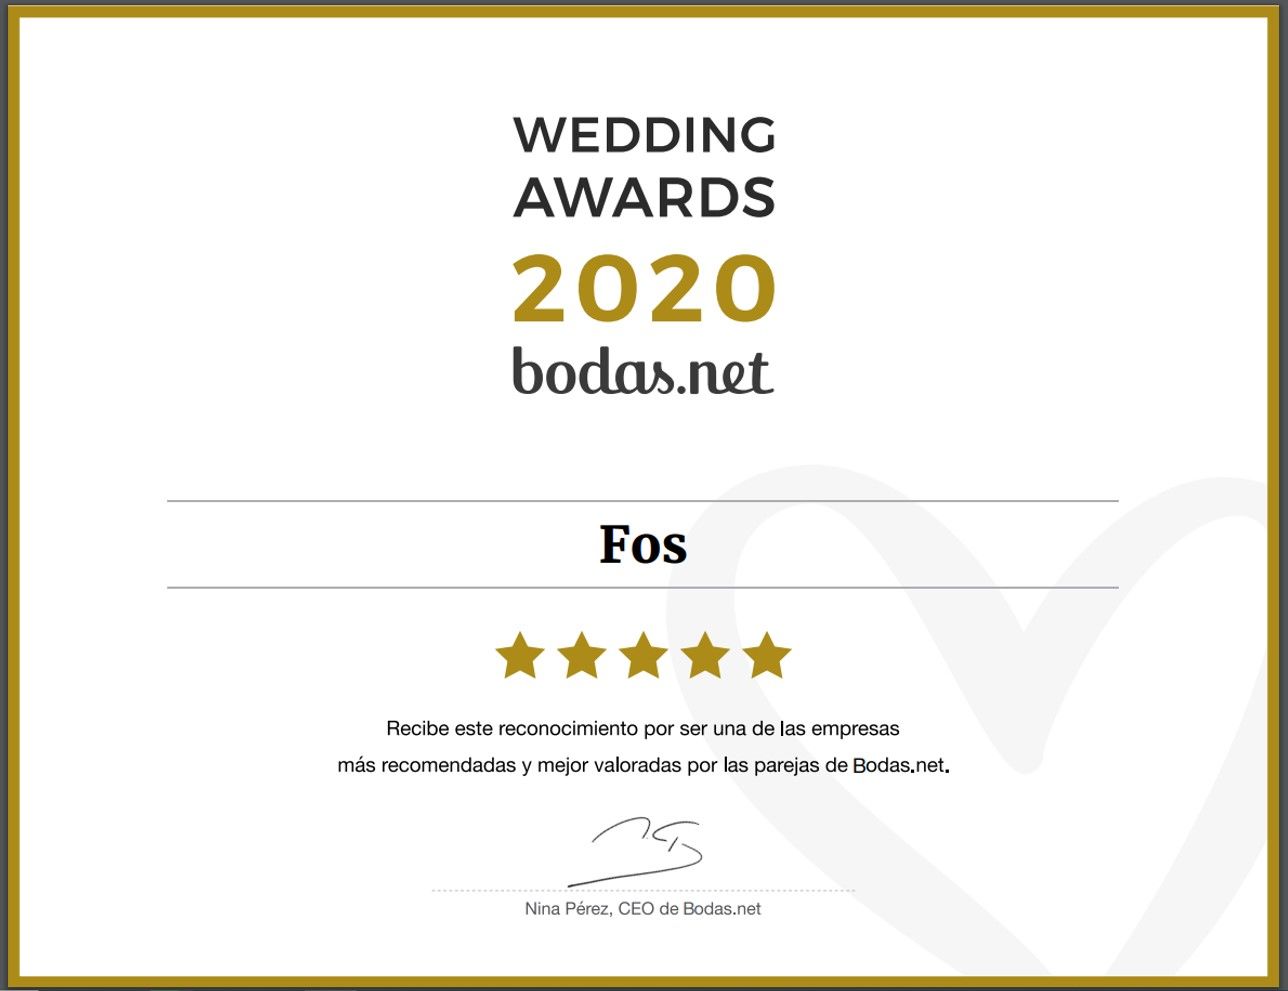 FOS | Fotografía & Vídeo  - weddings-award-2020.jpg